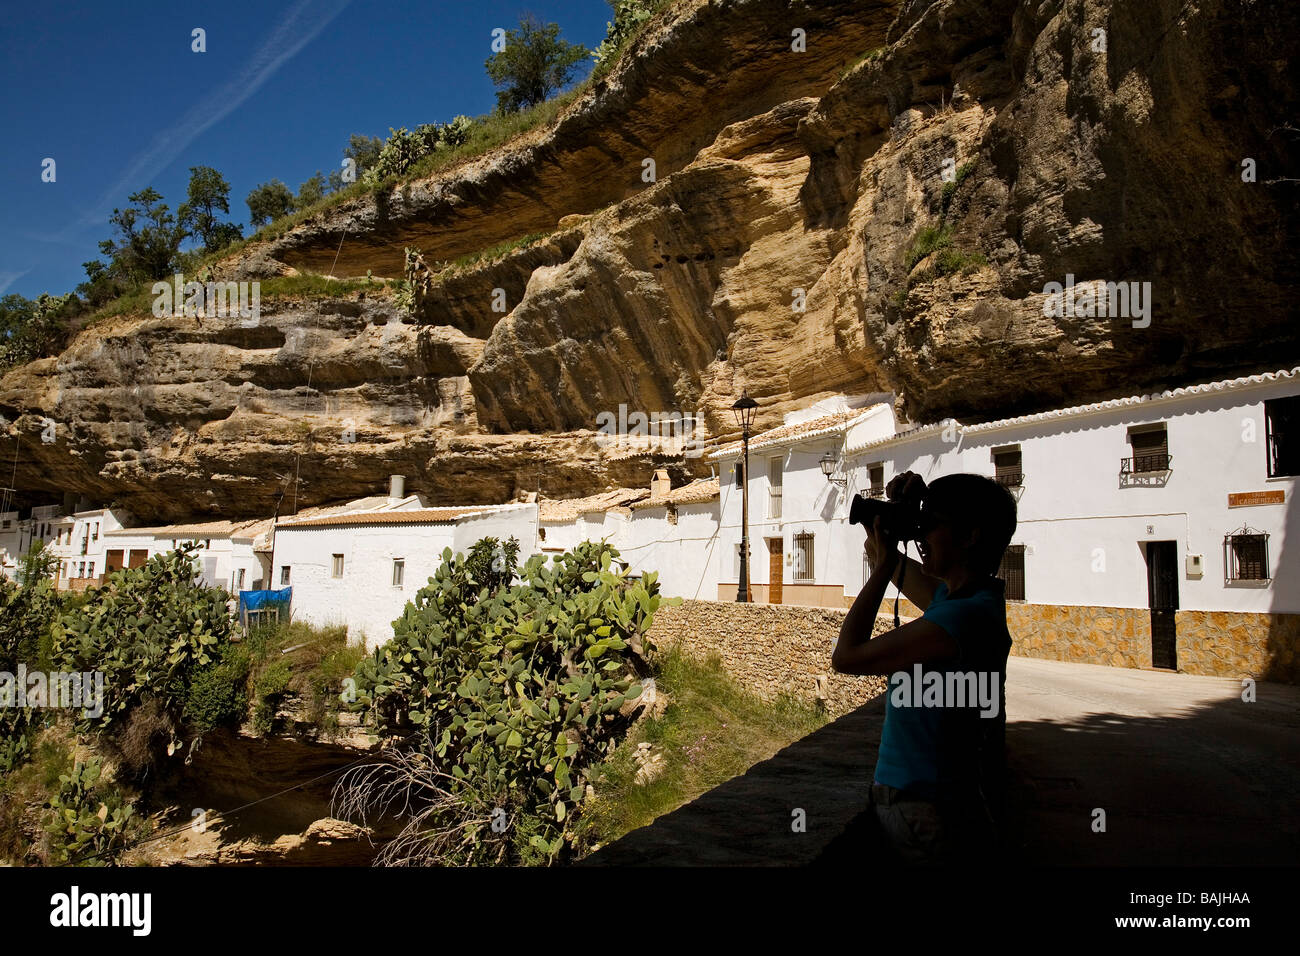 Typische Häuser in Setenil de Las Bodegas weißen Dörfer Sierra de Cadiz Andalusien Spanien Stockfoto